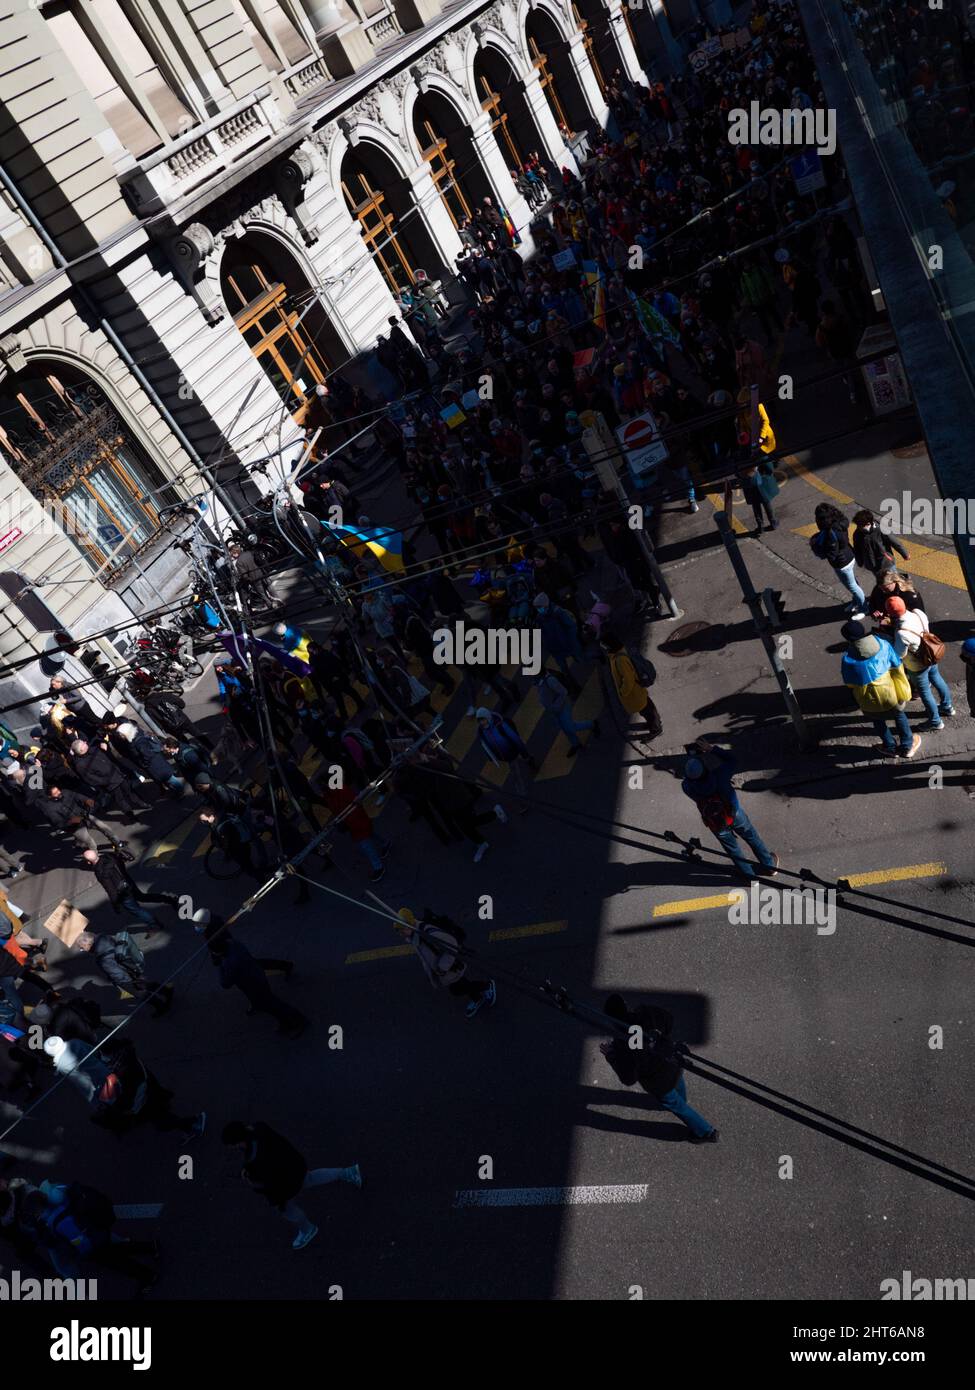 Bis zu 20’000 Menschen mit Transparenten in Bern protestieren gegen die russische Aggression in der Ukraine. Bern, Schweiz - 02.26.2022 Stockfoto